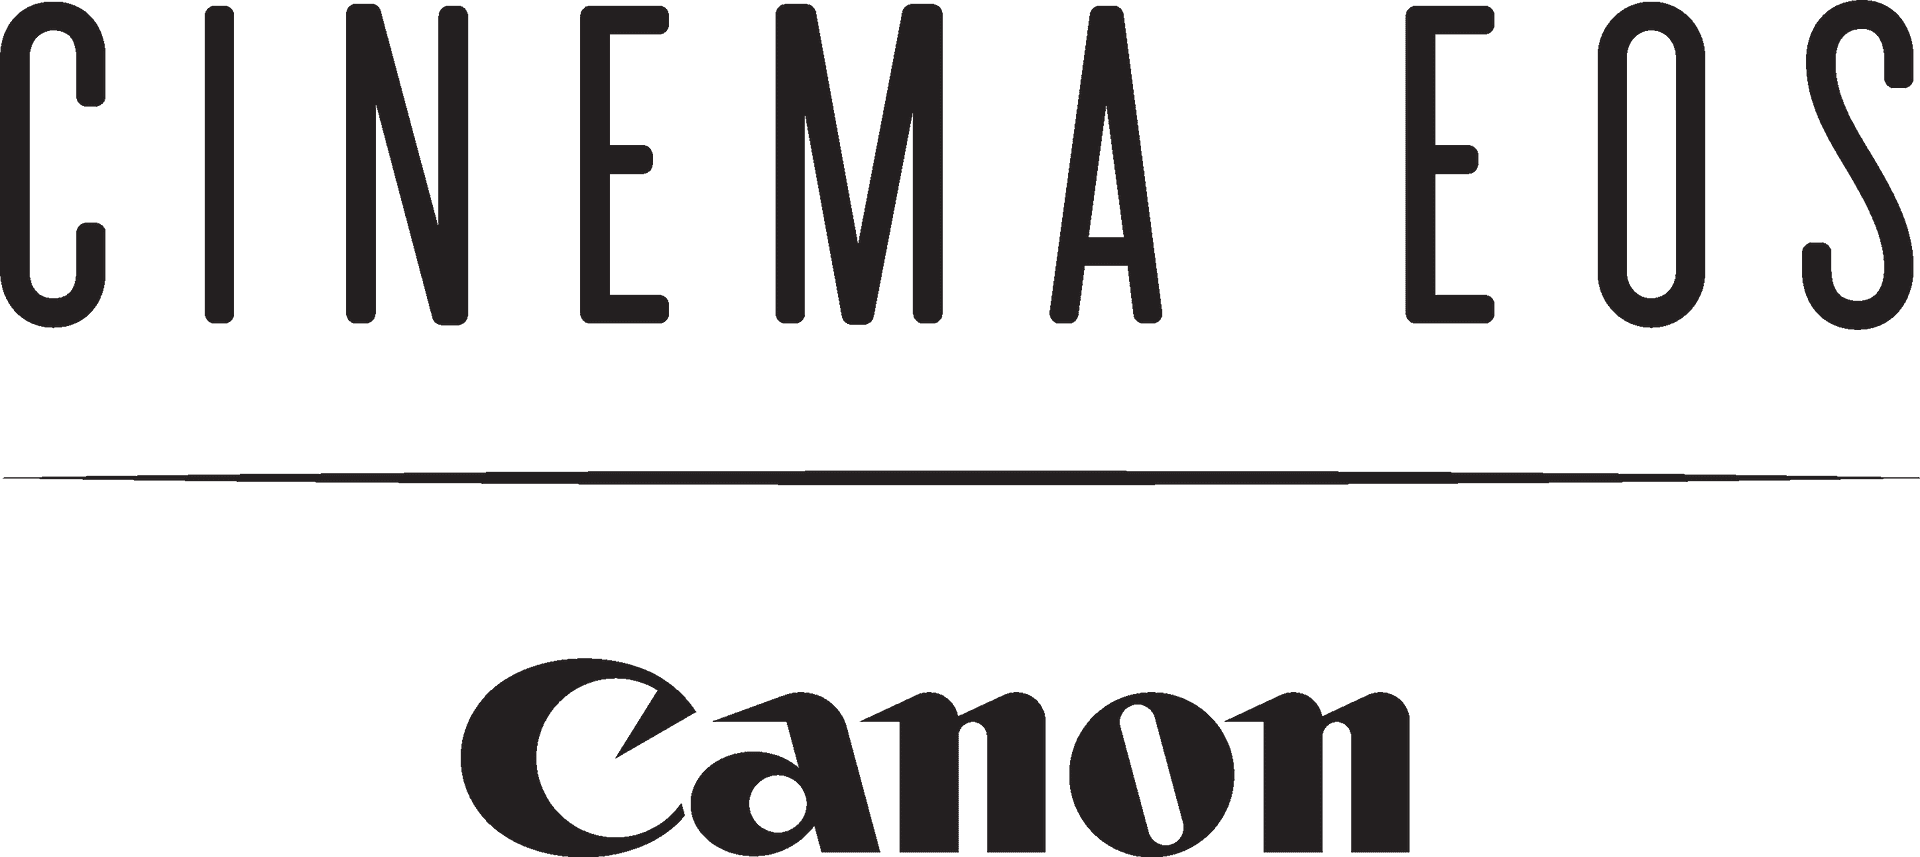 Canon Cinema E O S Logo PNG image